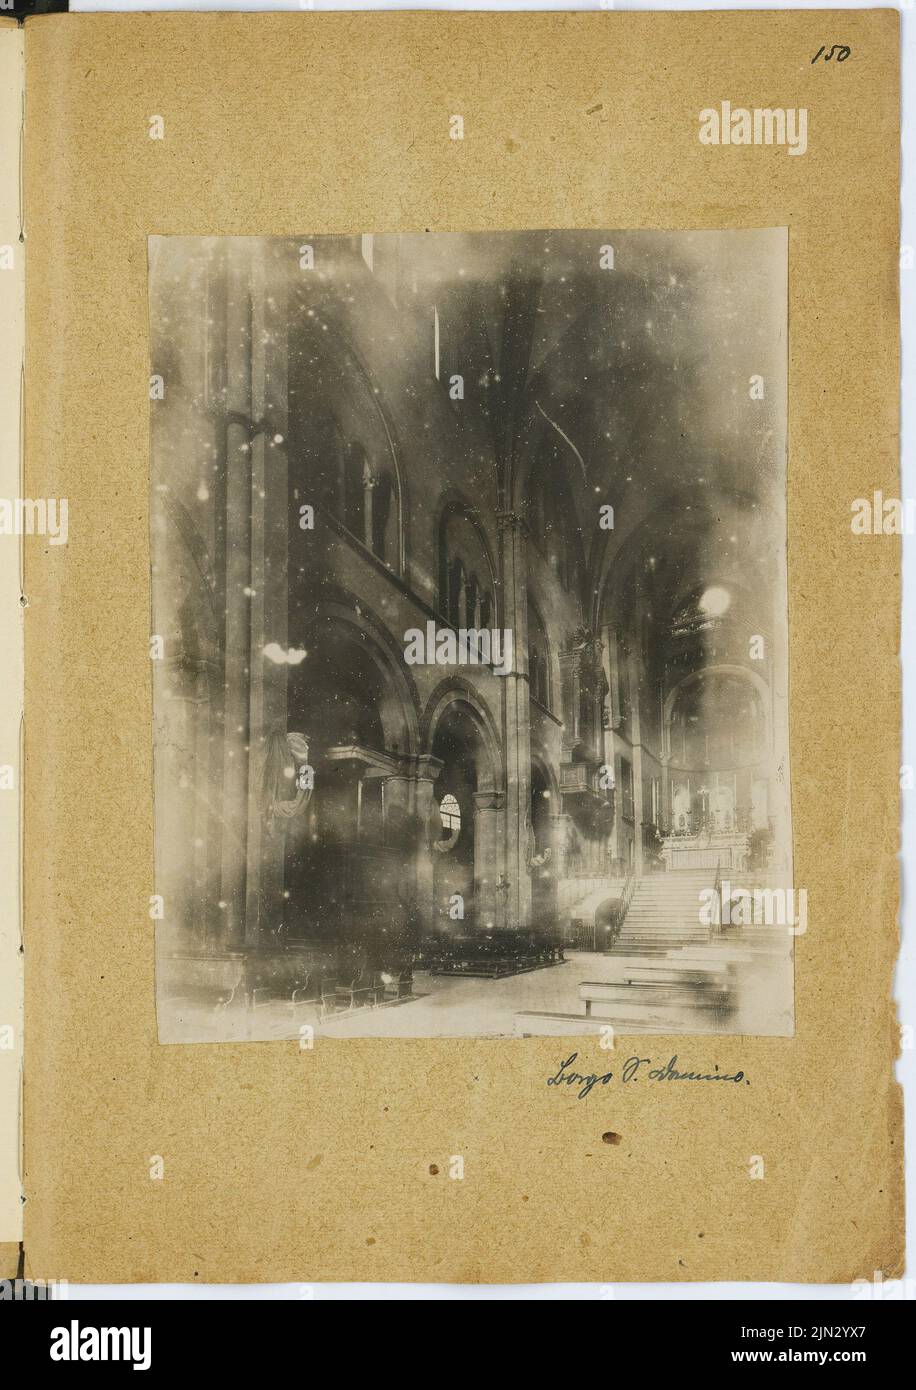 Stiehl otto (1860-1940): Schizzo e album fotografico 4: Chiesa, Borgo San Donnino Foto Stock